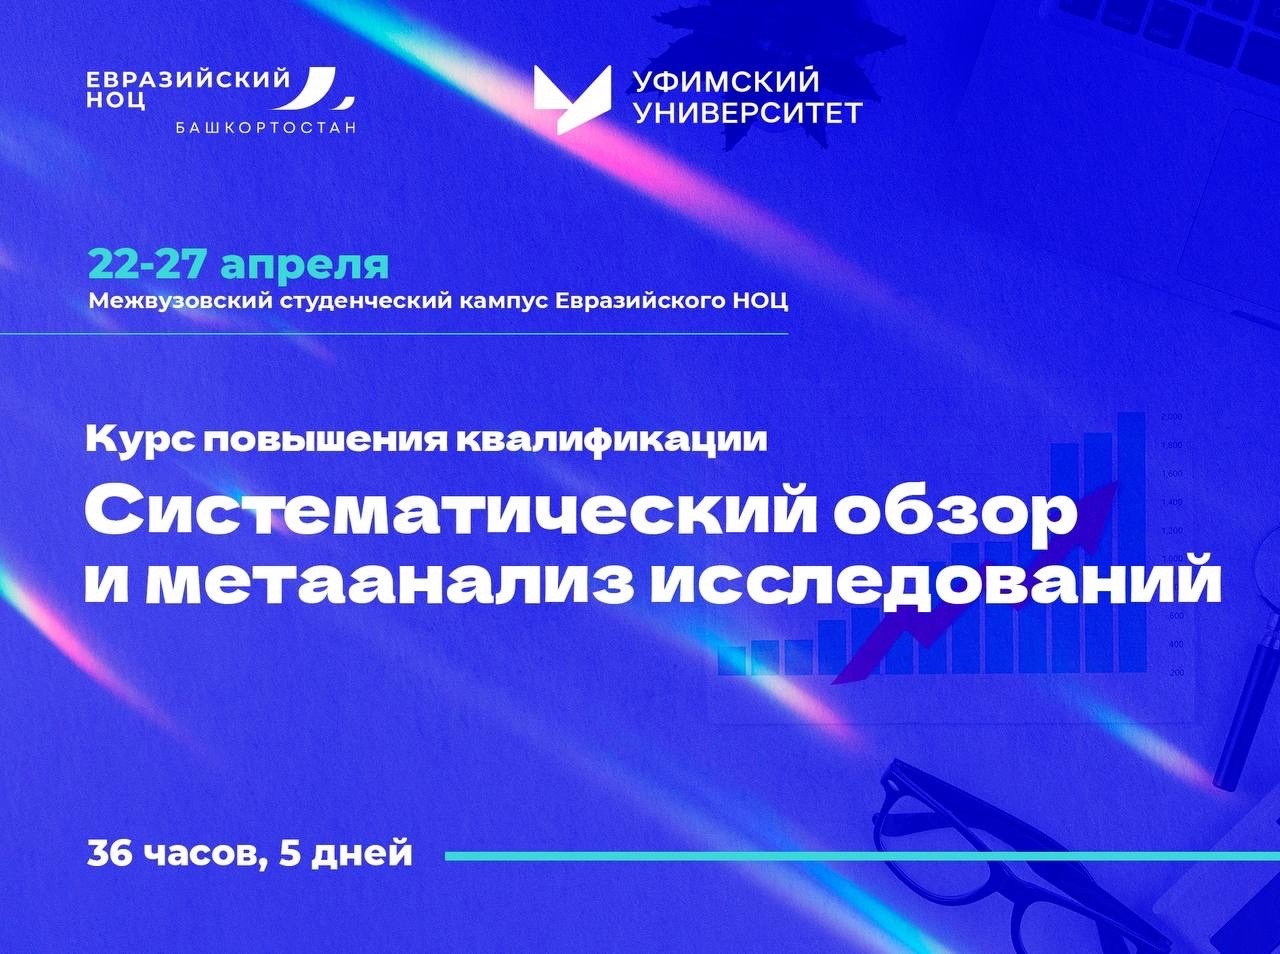 Евразийский НОЦ запускает программу повышения квалификации «Систематический обзор и метаанализ исследований»